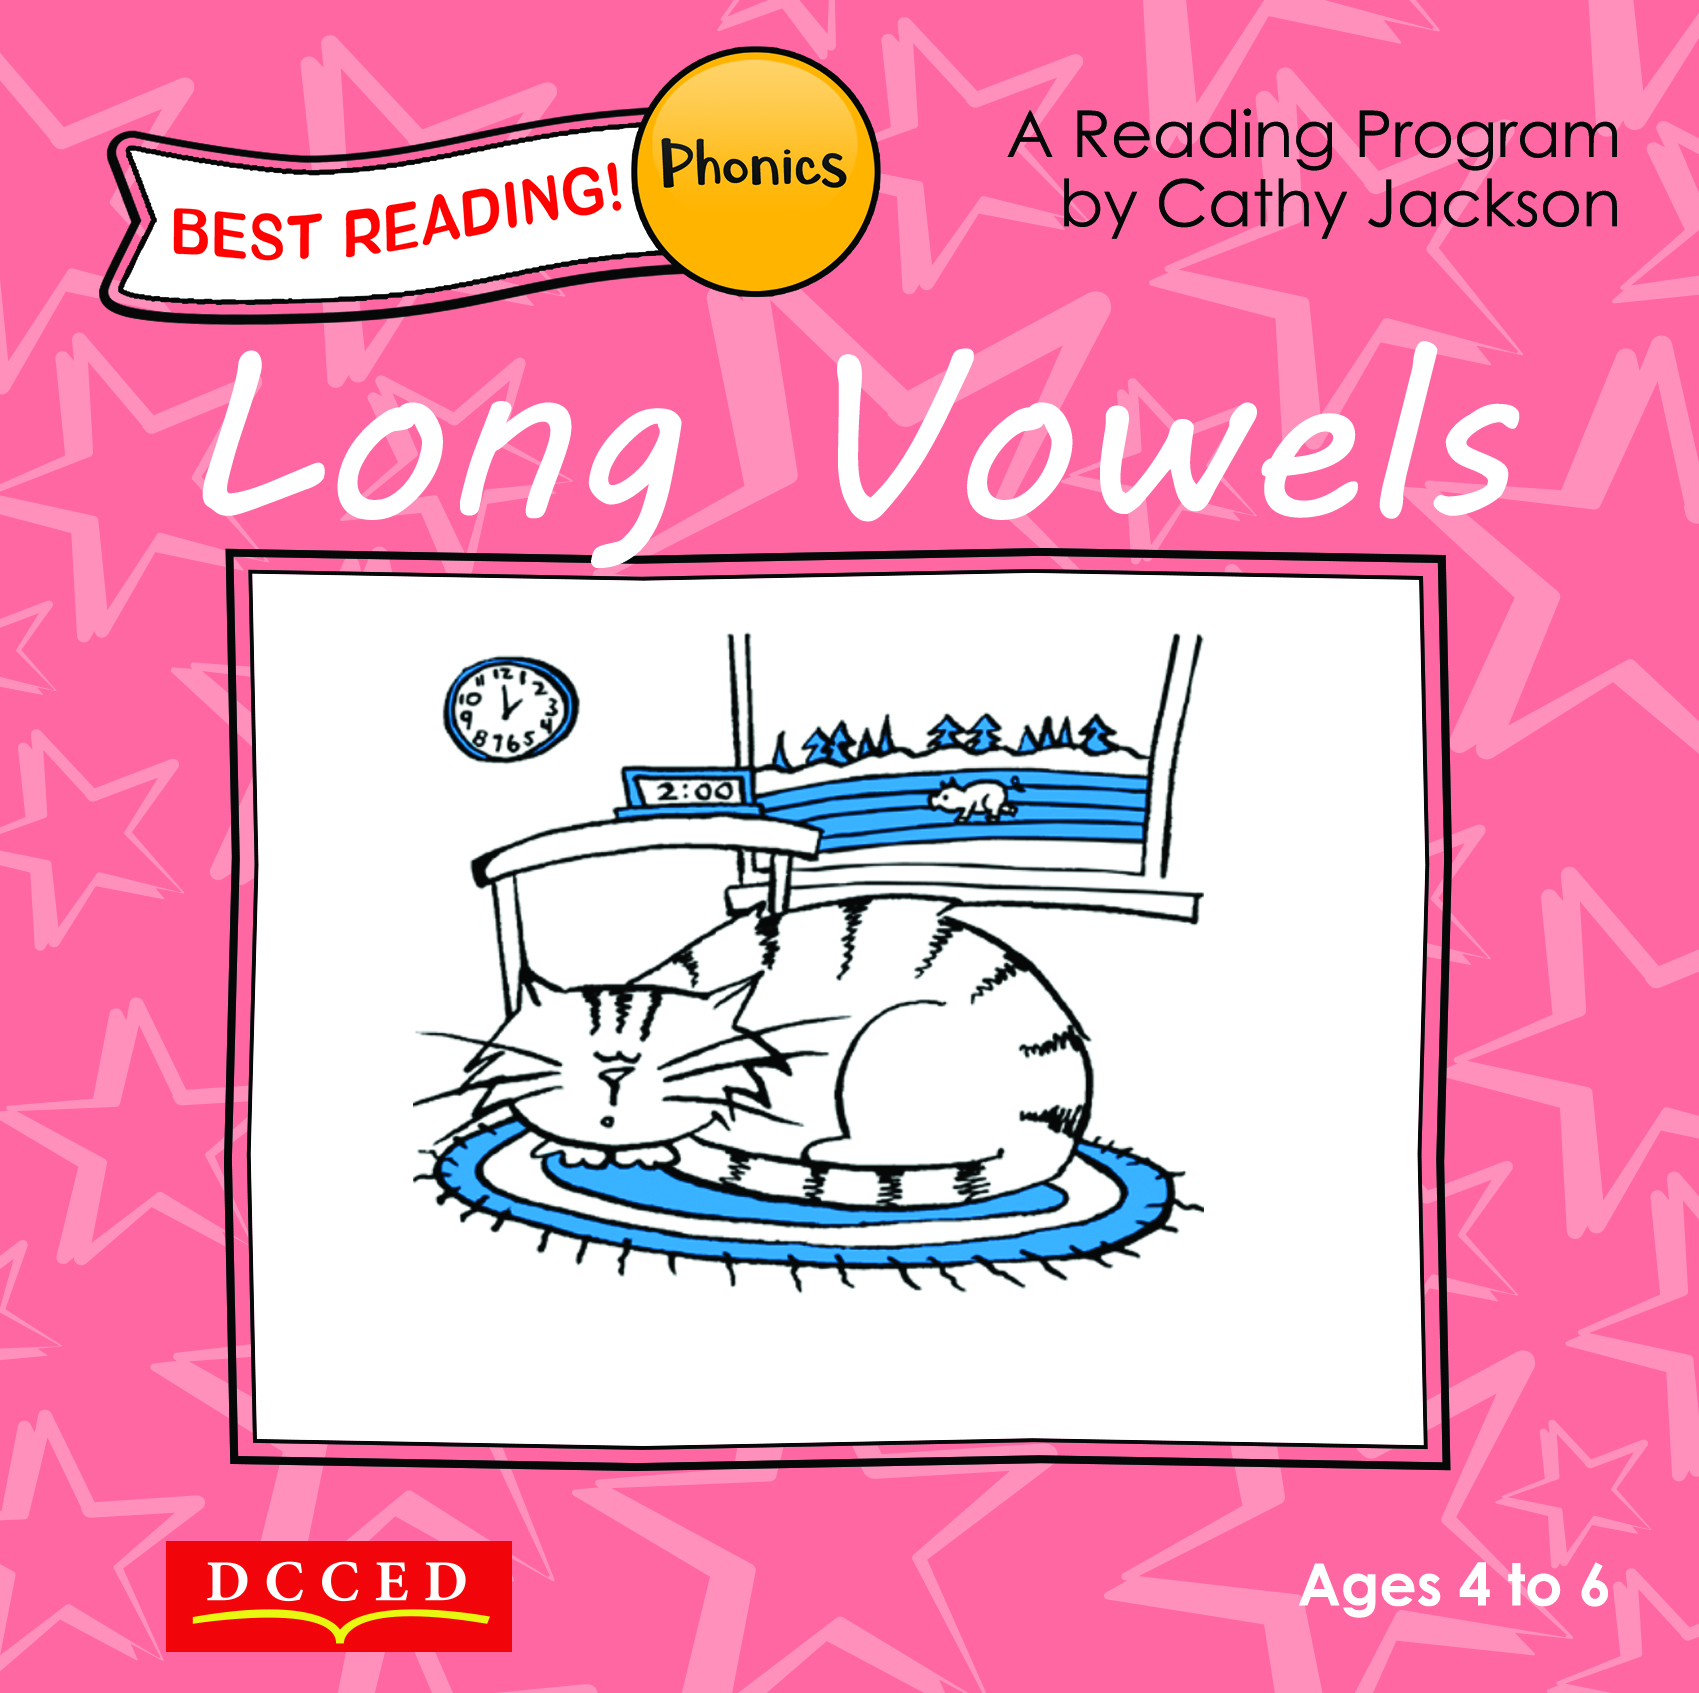 Long Vowels 1